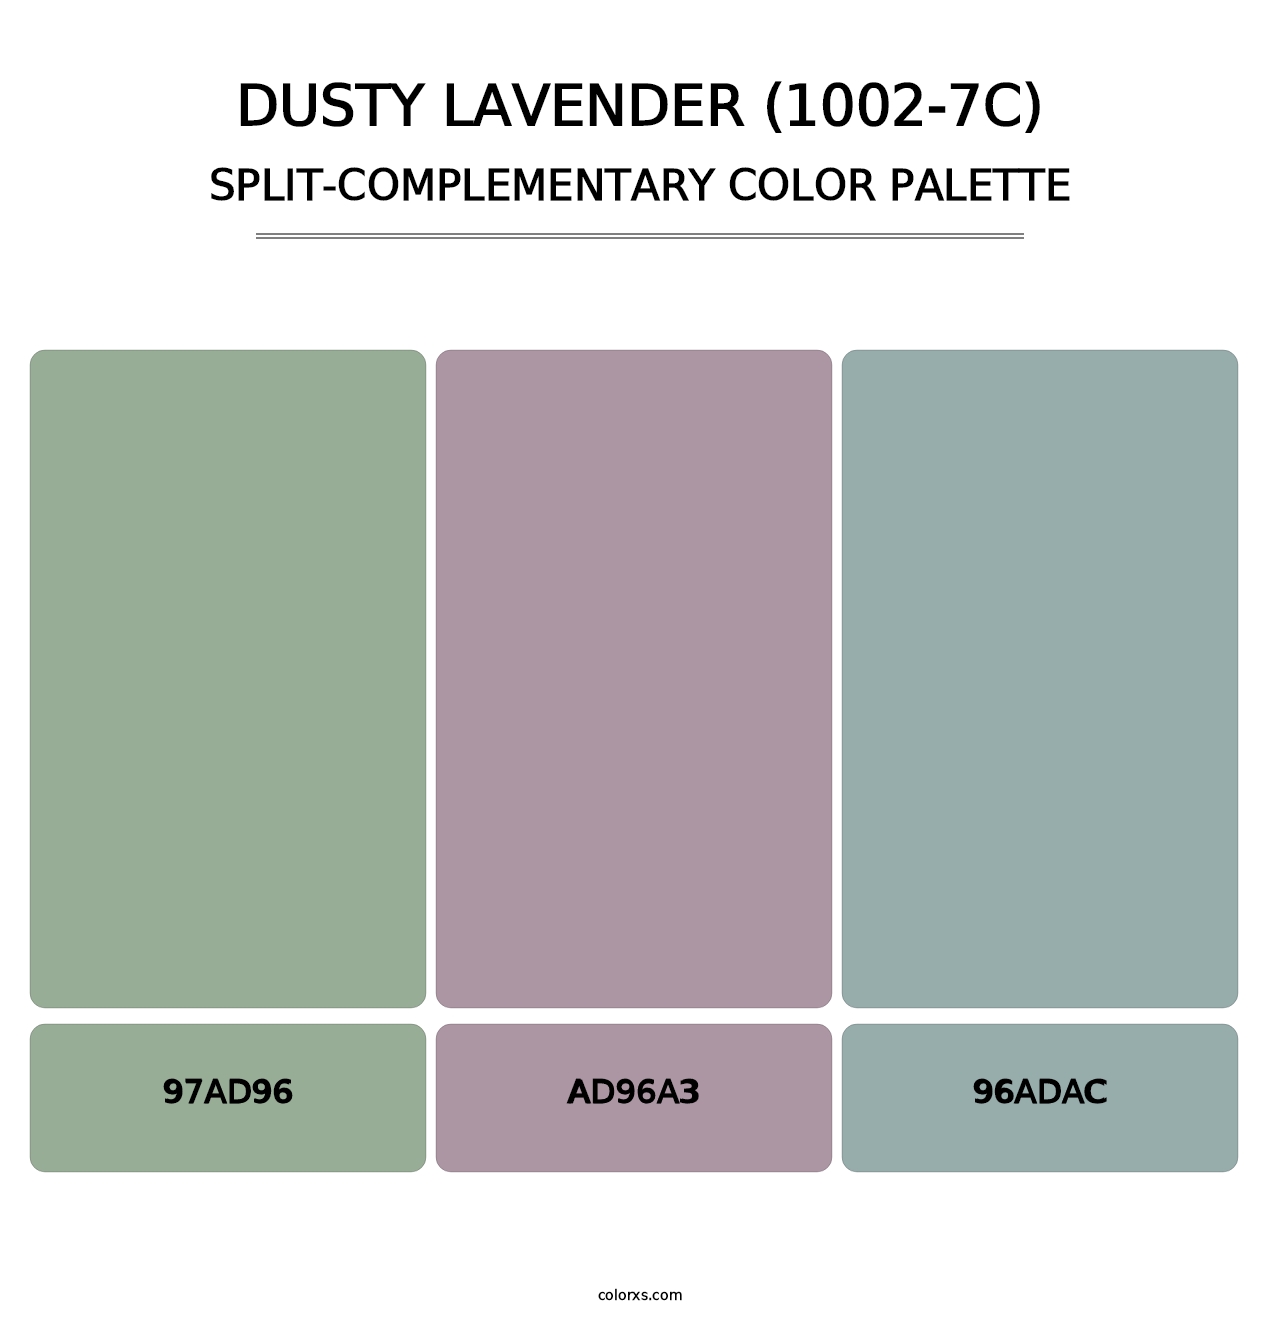 Dusty Lavender (1002-7C) - Split-Complementary Color Palette